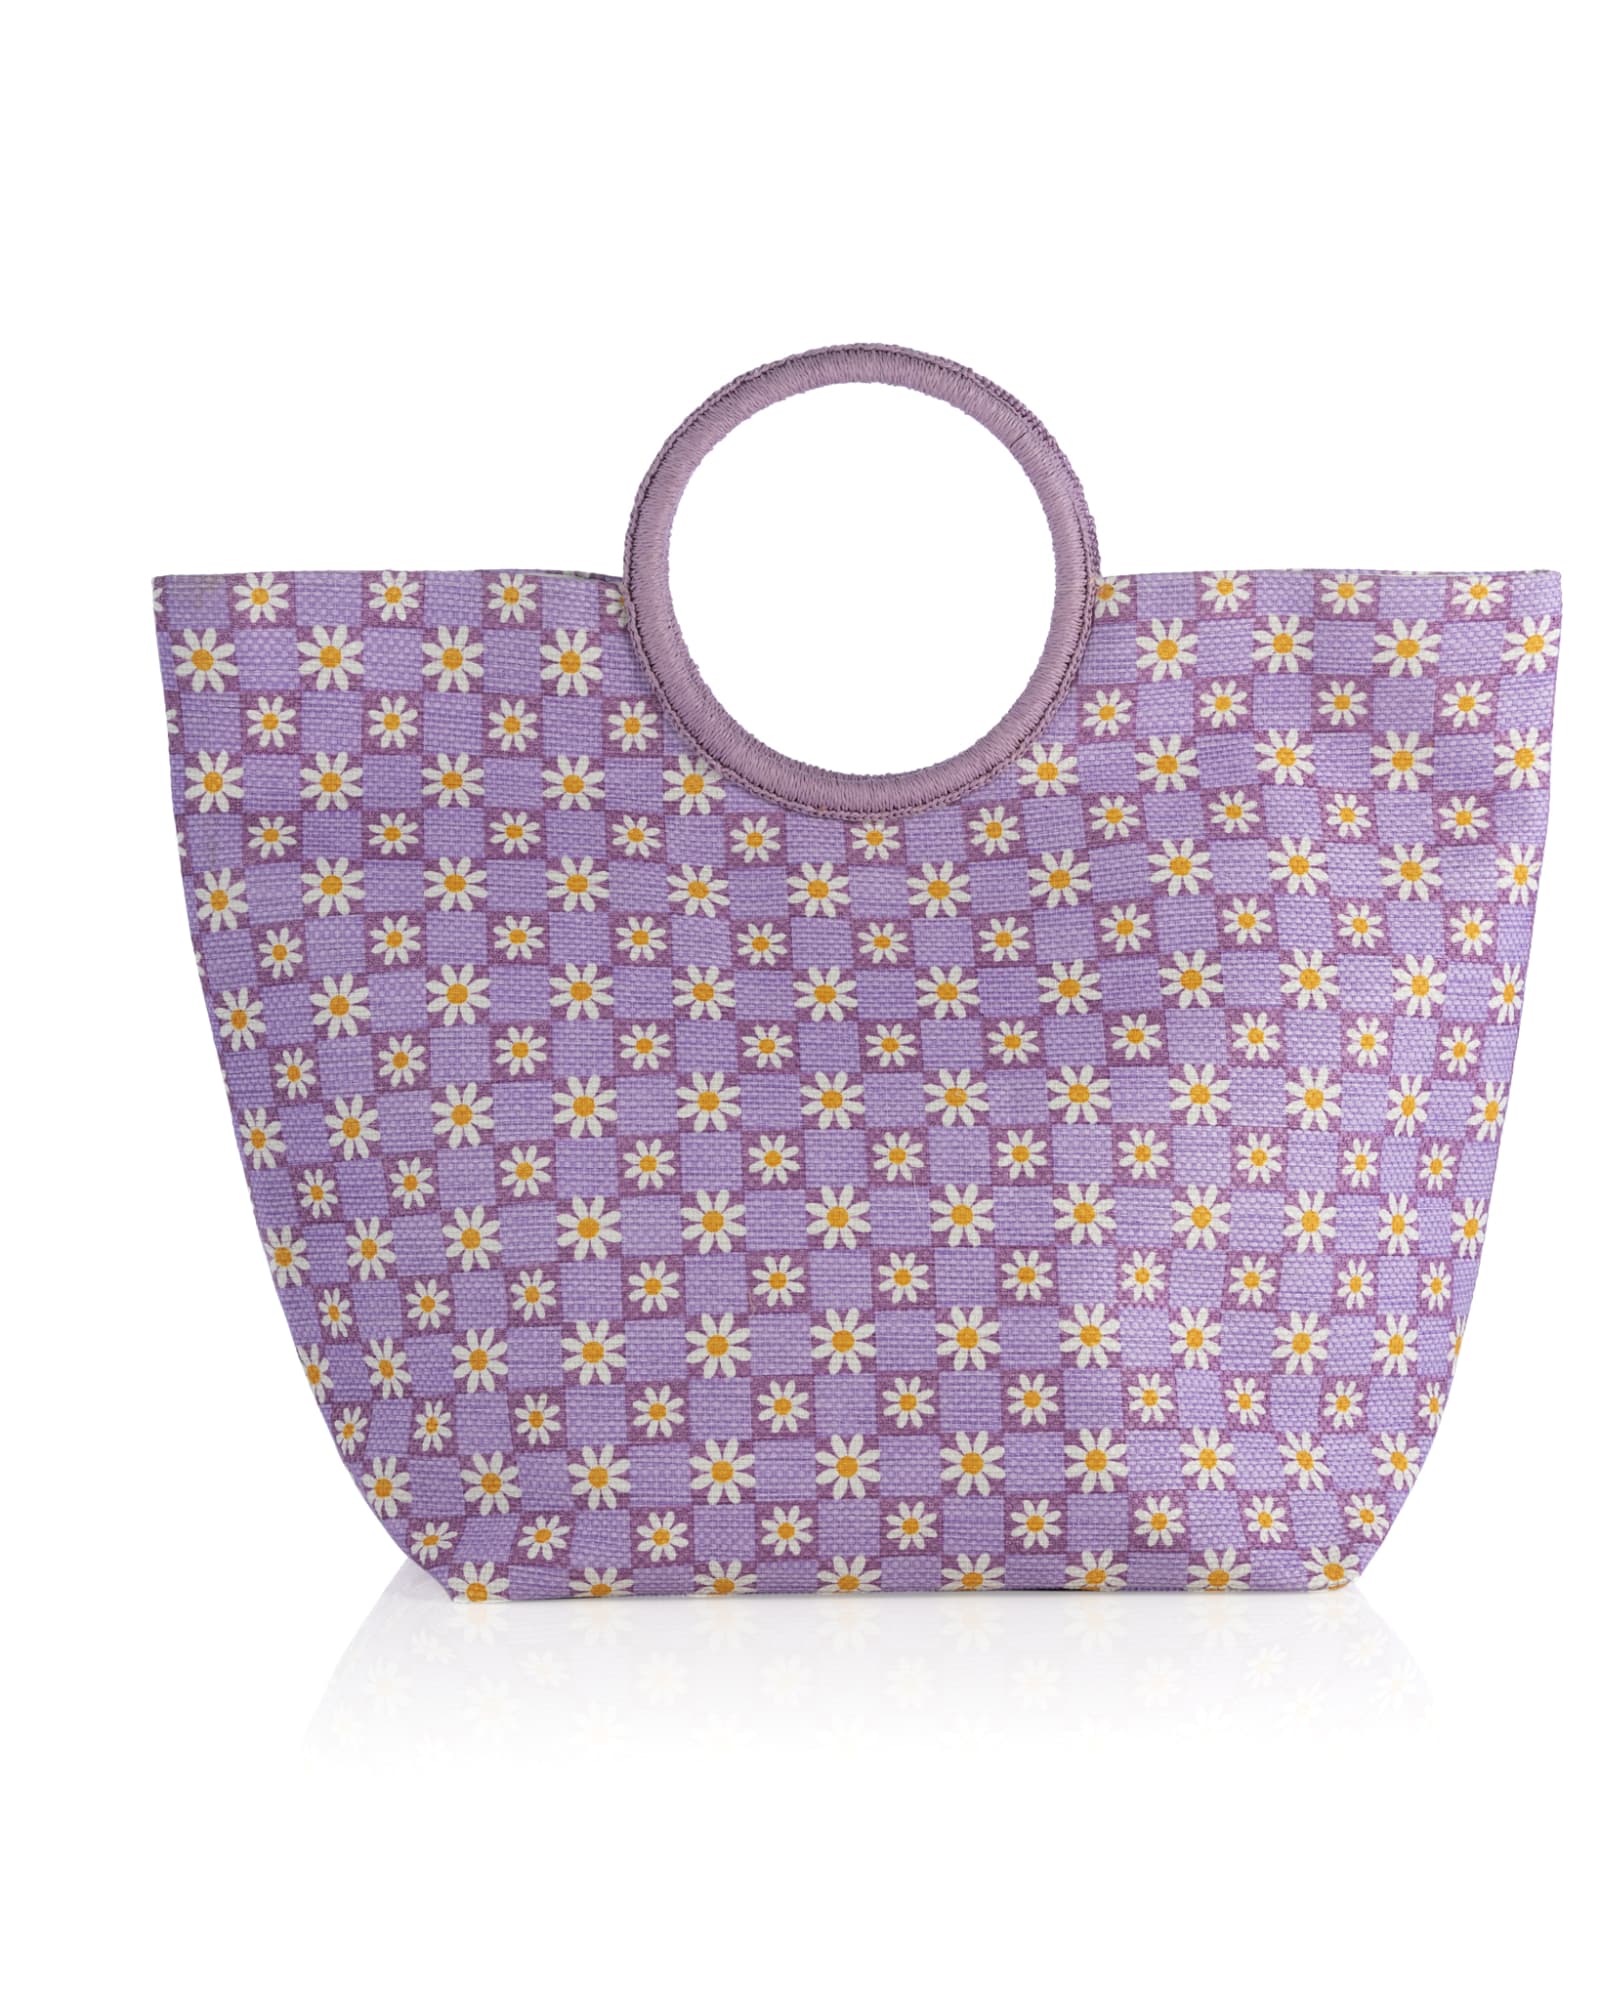 Shiraleah Daisy - Tote Bag - Natural Floral Print Bag - Woven Bag